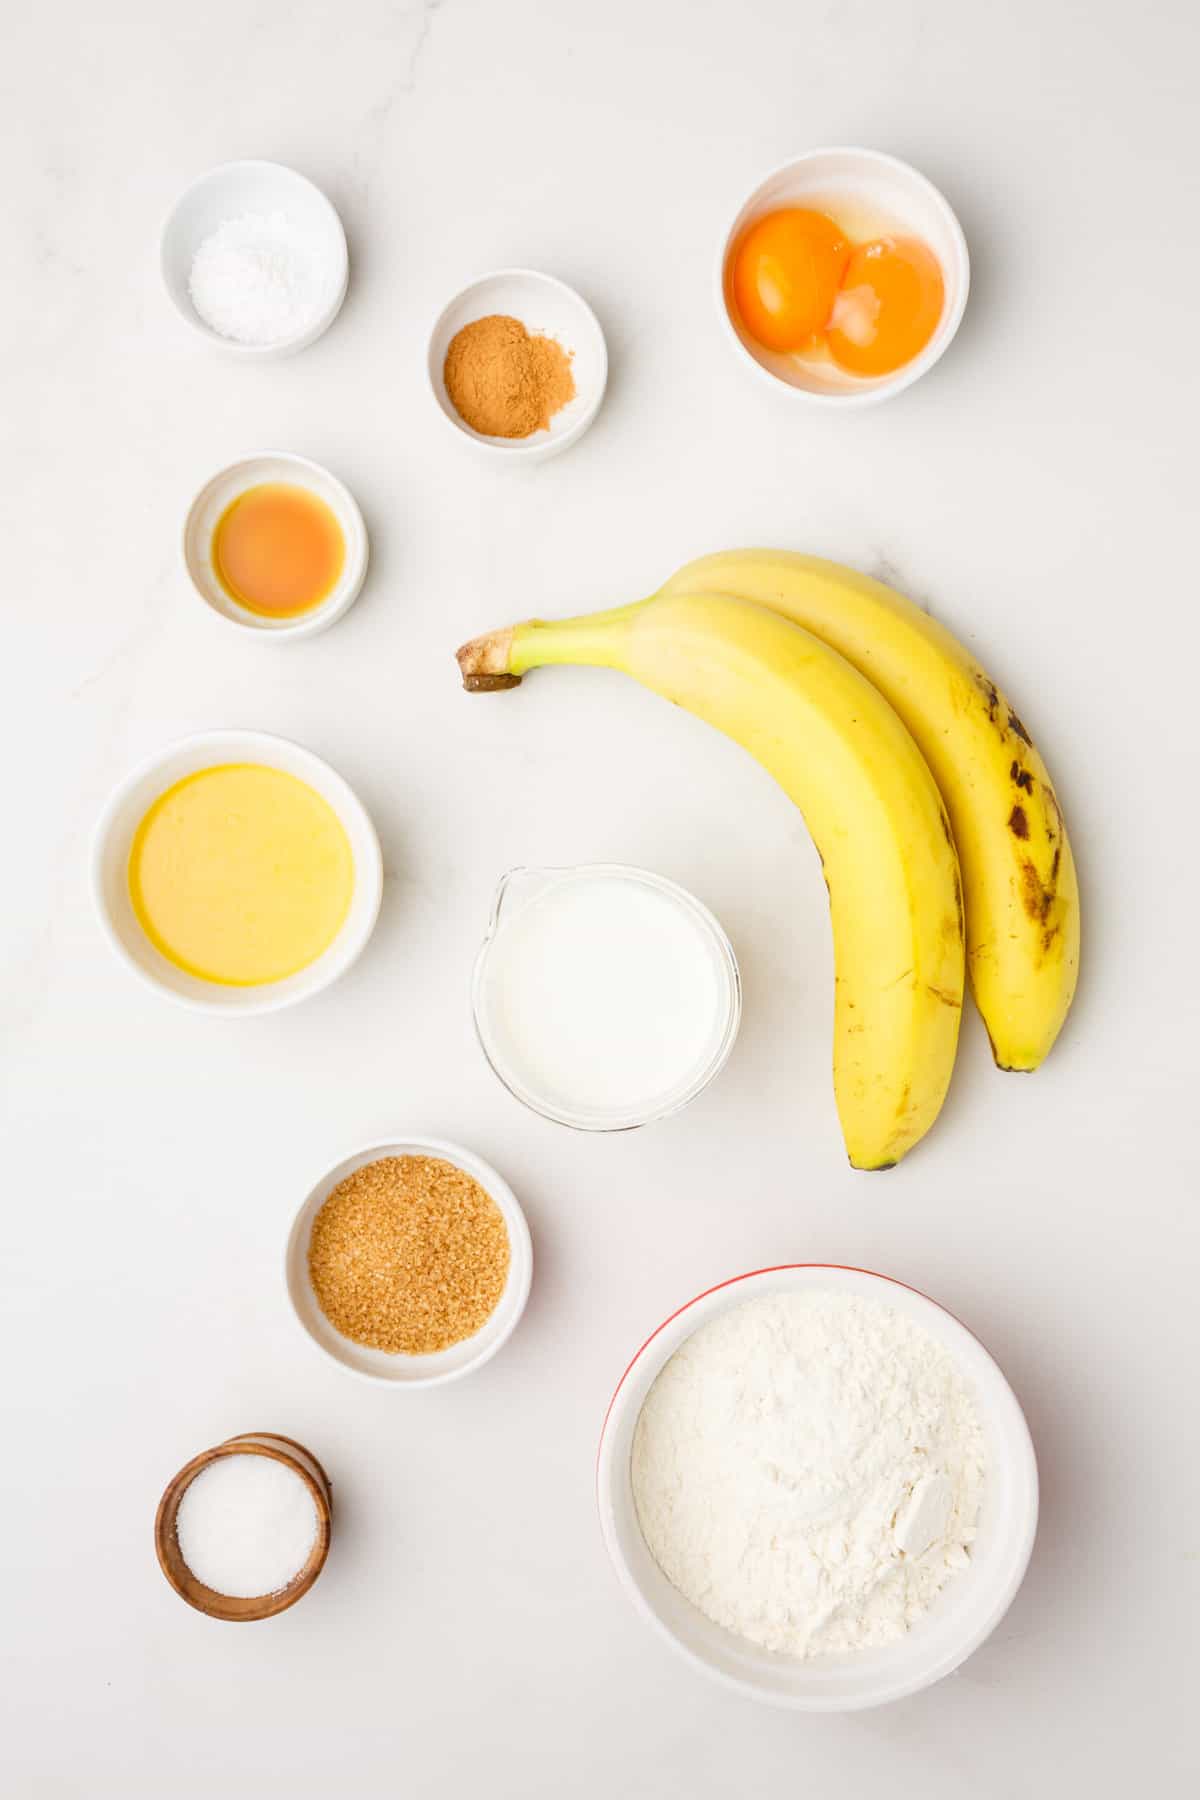 ingredients to make banana waffles.